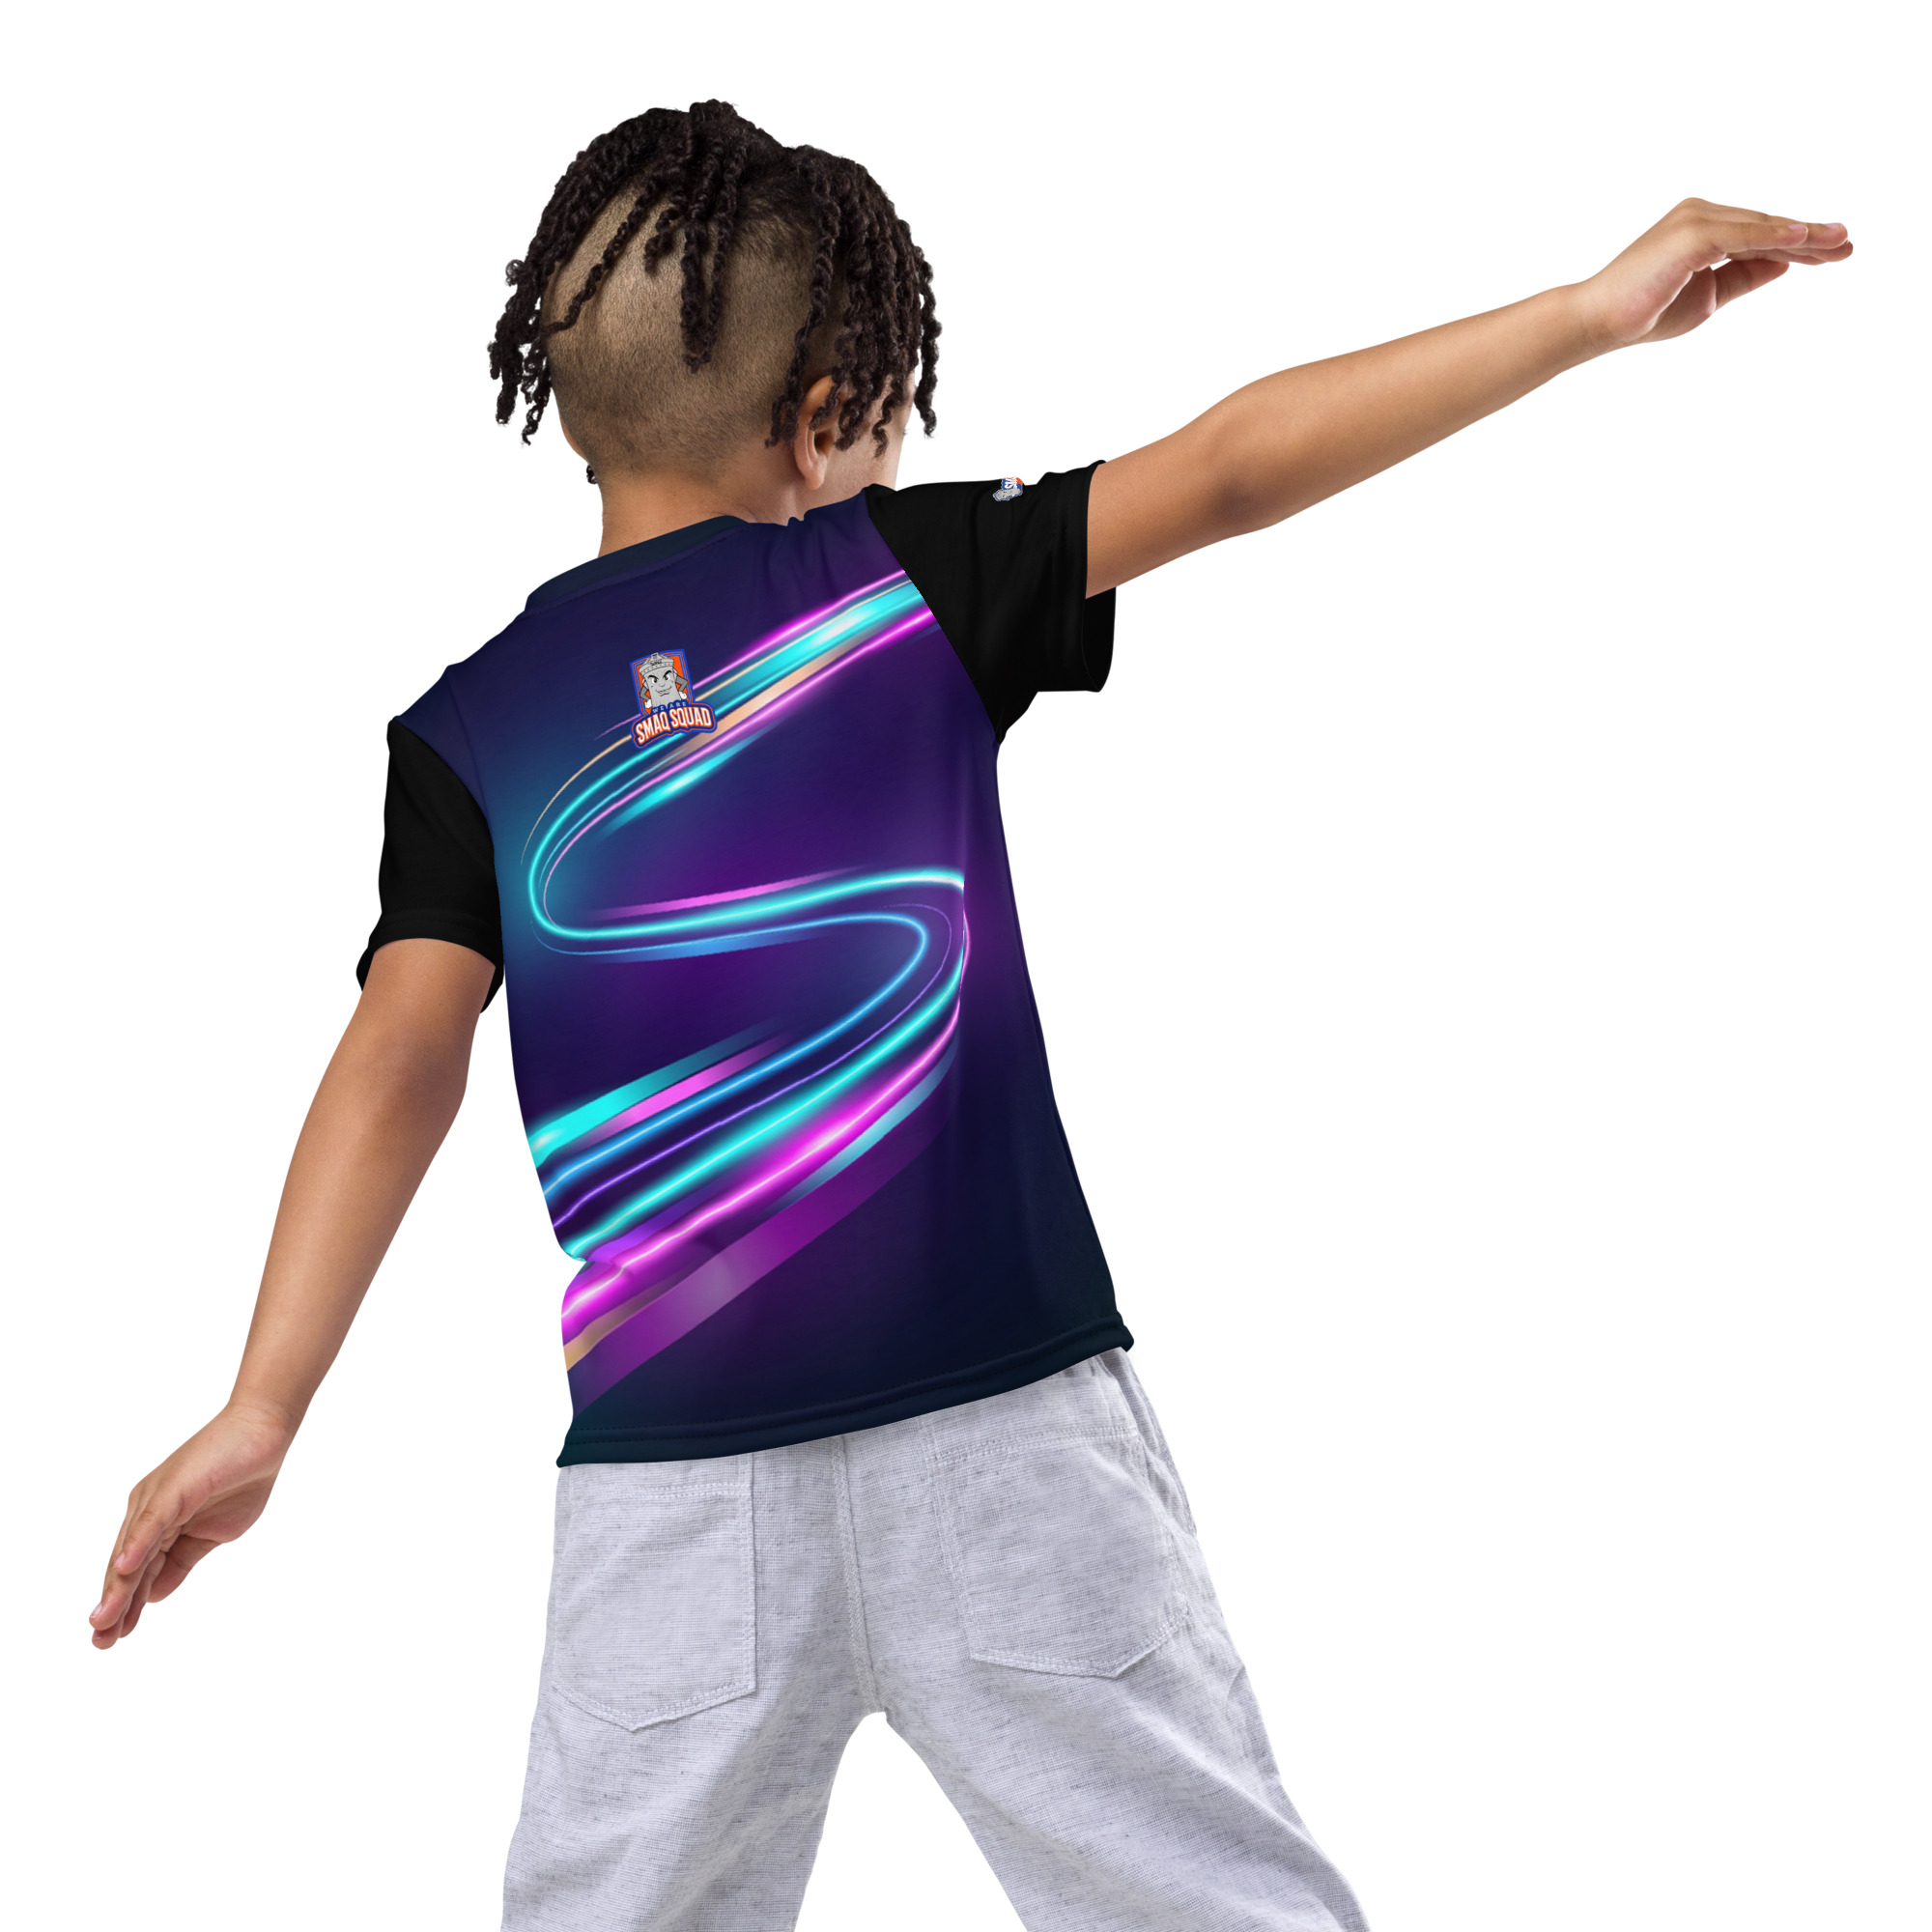 SMAQ Neon Shreddin Kids crew neck t-shirt